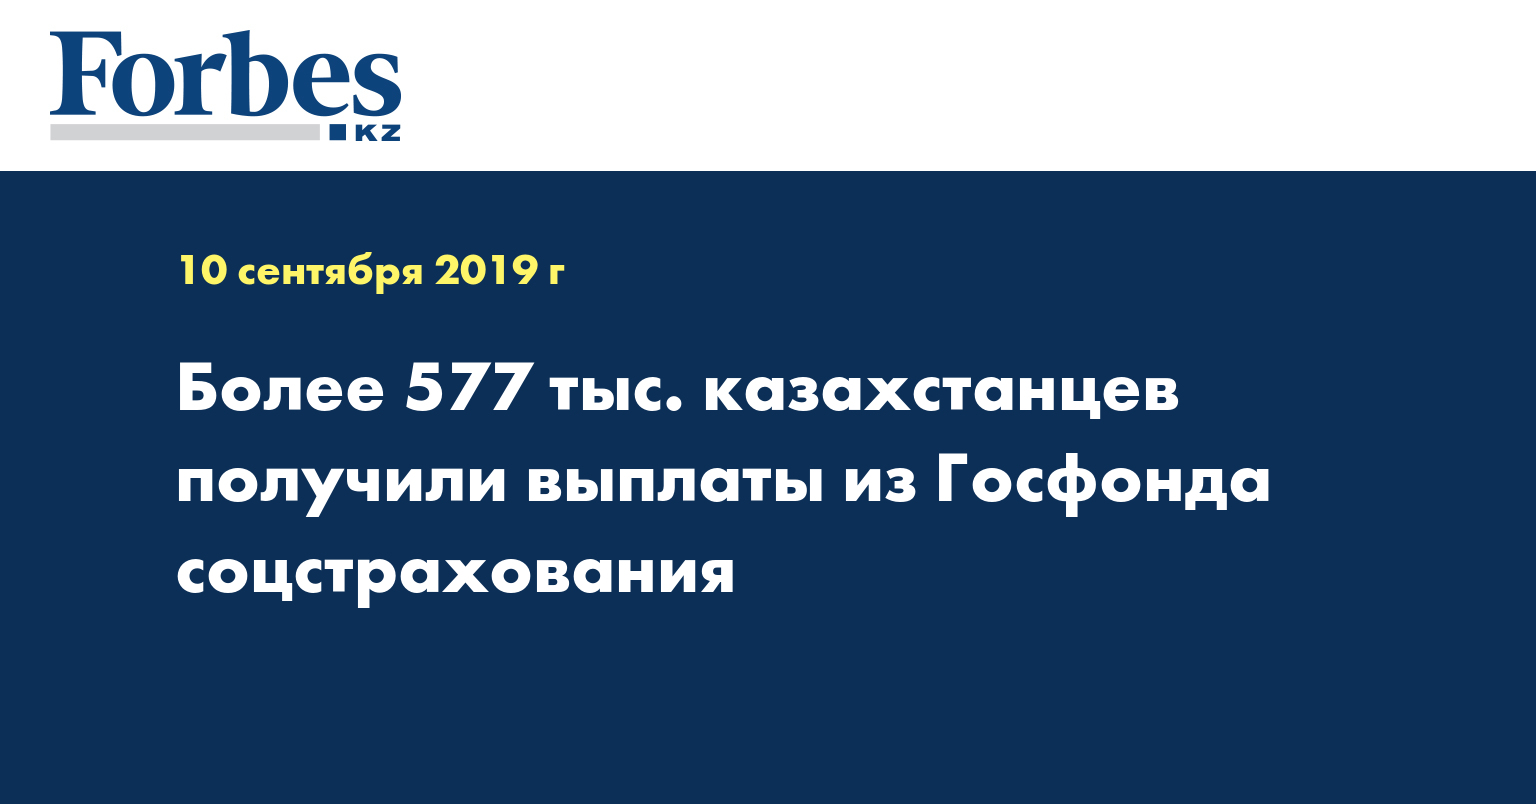 Более 577 тыс. казахстанцев получили выплаты из Госфонда соцстрахования